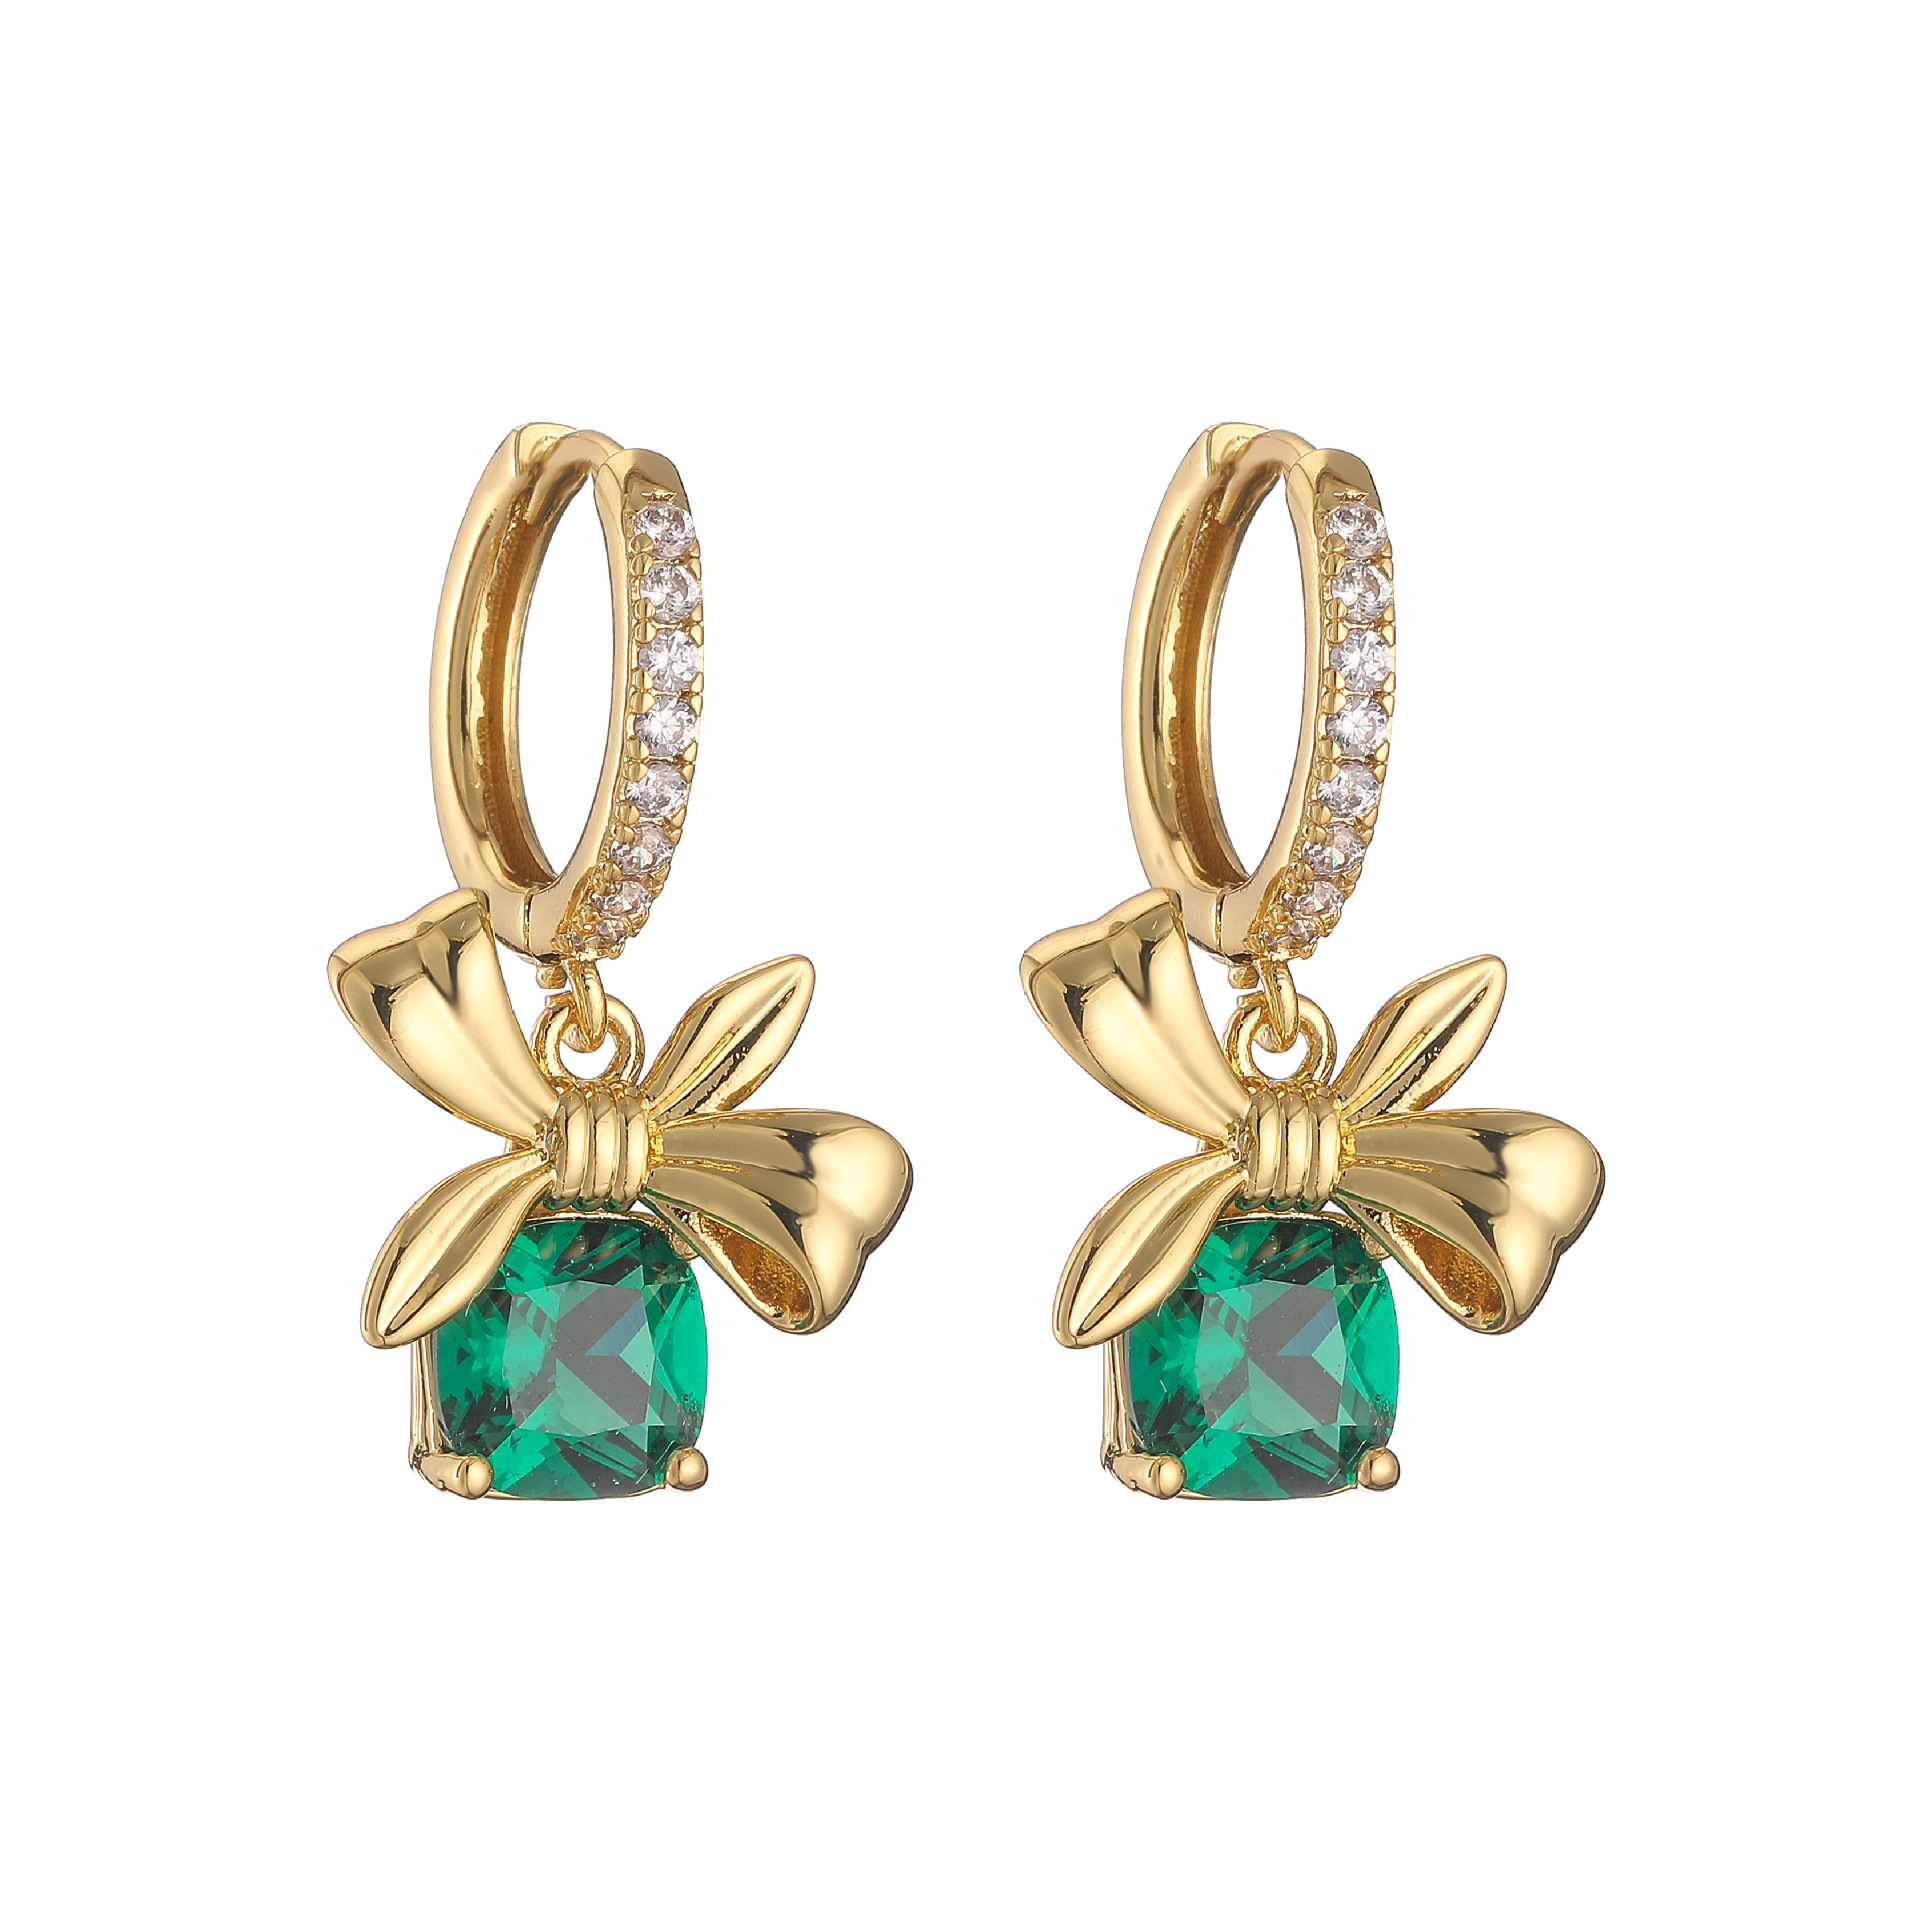 4:Green earrings